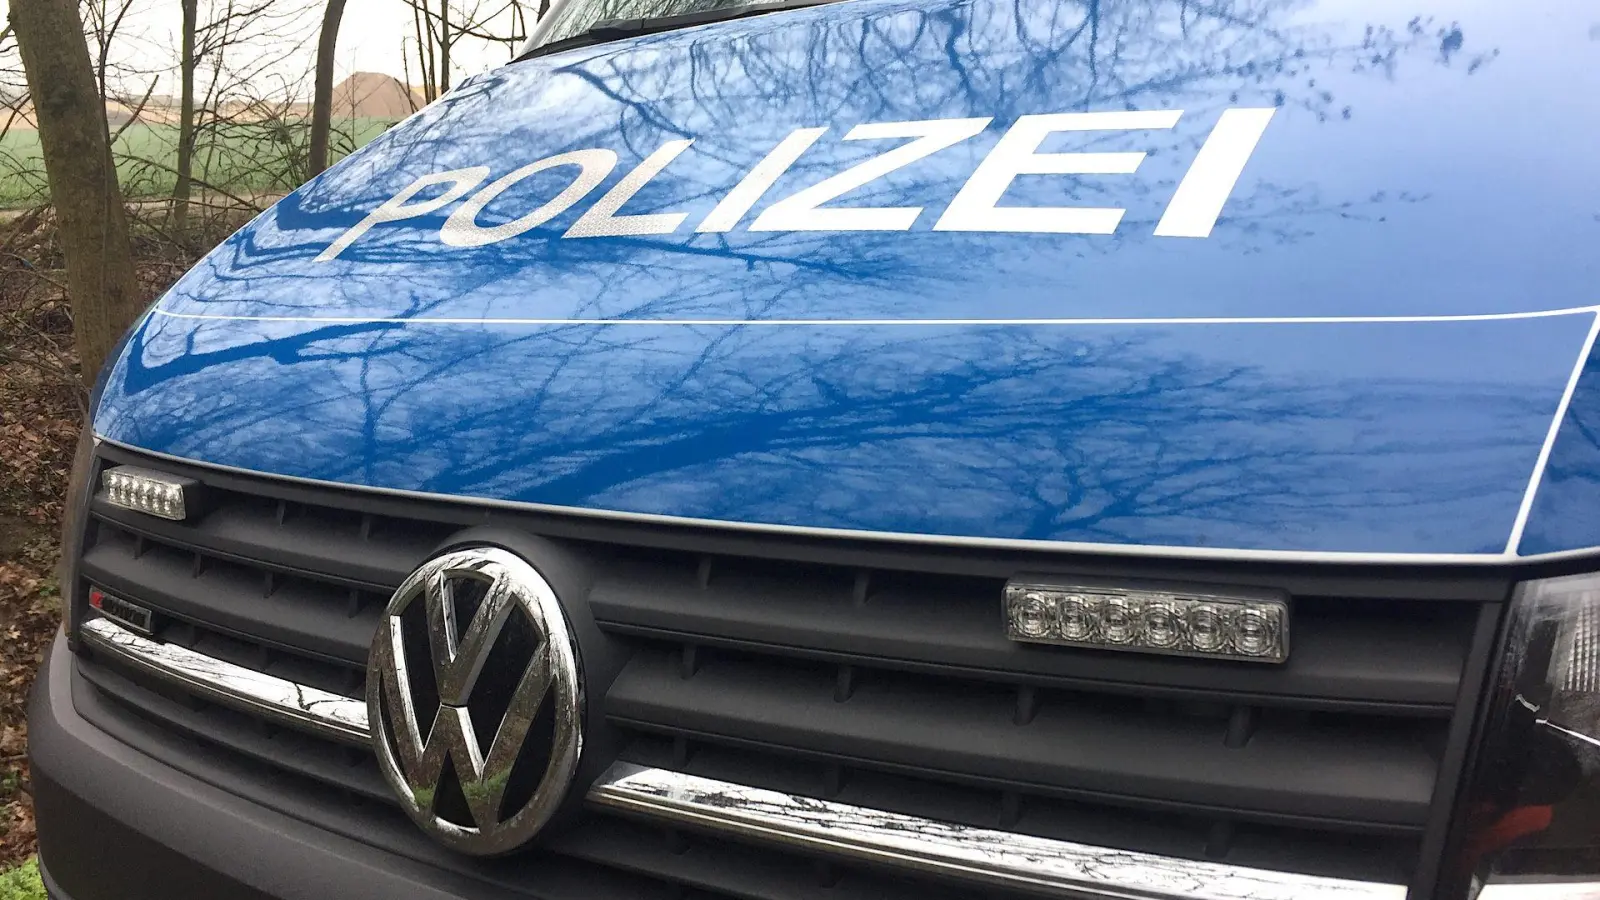 Polizei sucht 13-jähriges Mädchen aus Dahlen / Update: Mädchen wohlauf (Foto: taucha-kompakt.de)